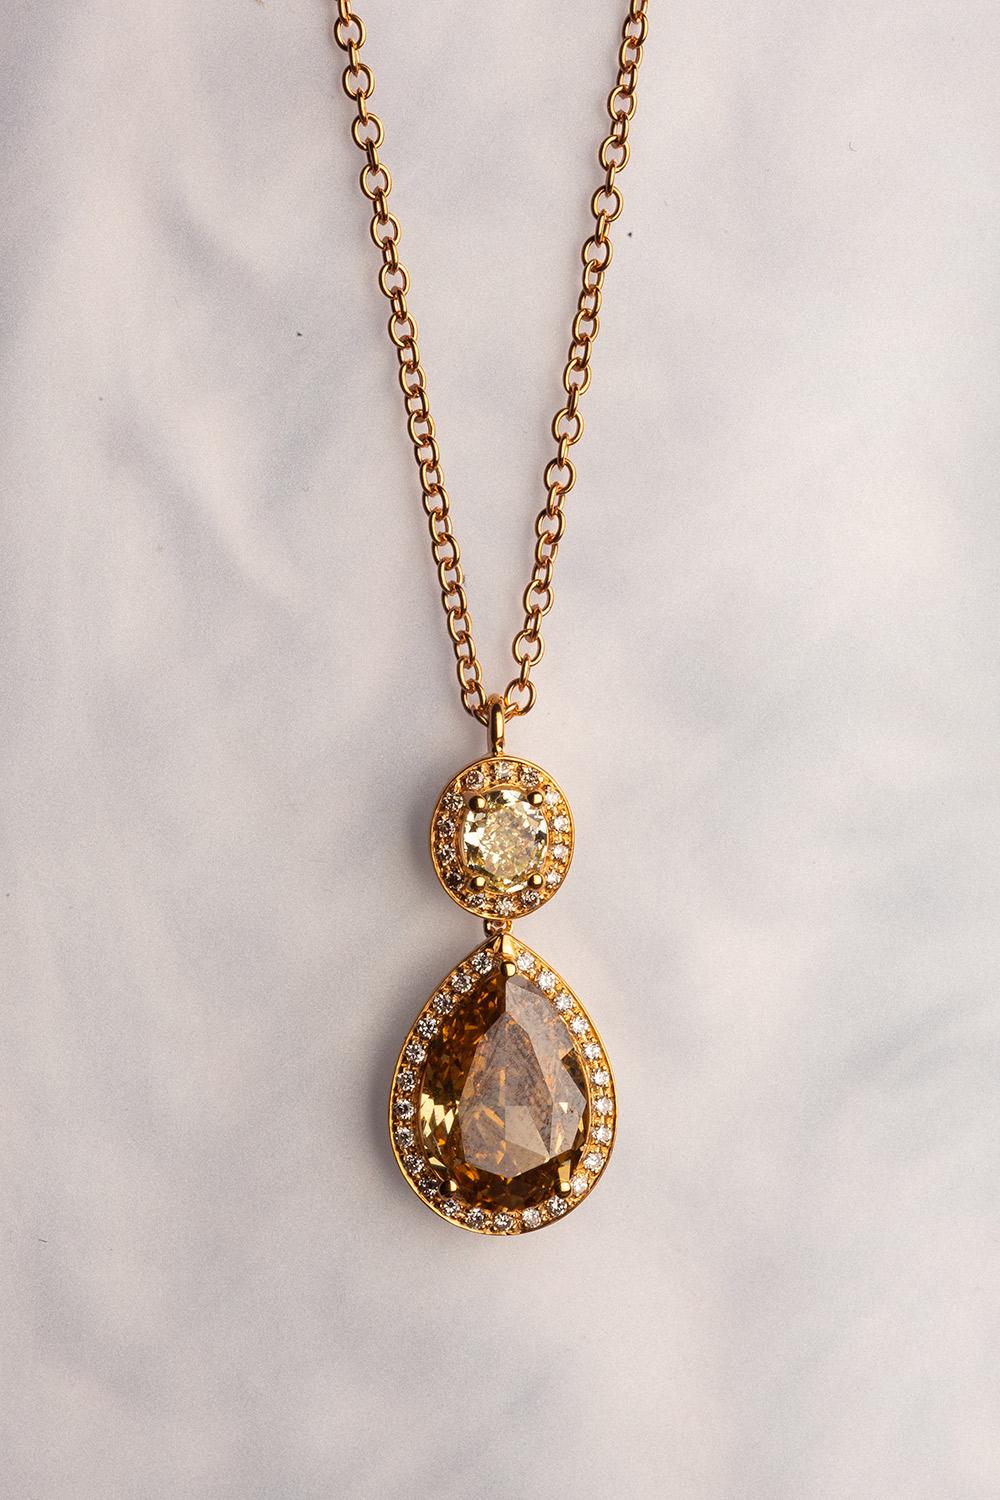 Dieser elegante Anhänger aus 18 Karat Gelbgold ist aus unserer Divine Collection'S. Er besteht aus einem birnenförmigen braunen Diamanten von insgesamt 2,39 Karat und einem ovalen gelben Diamanten von insgesamt 0,42 Karat. Beide Diamanten sind mit